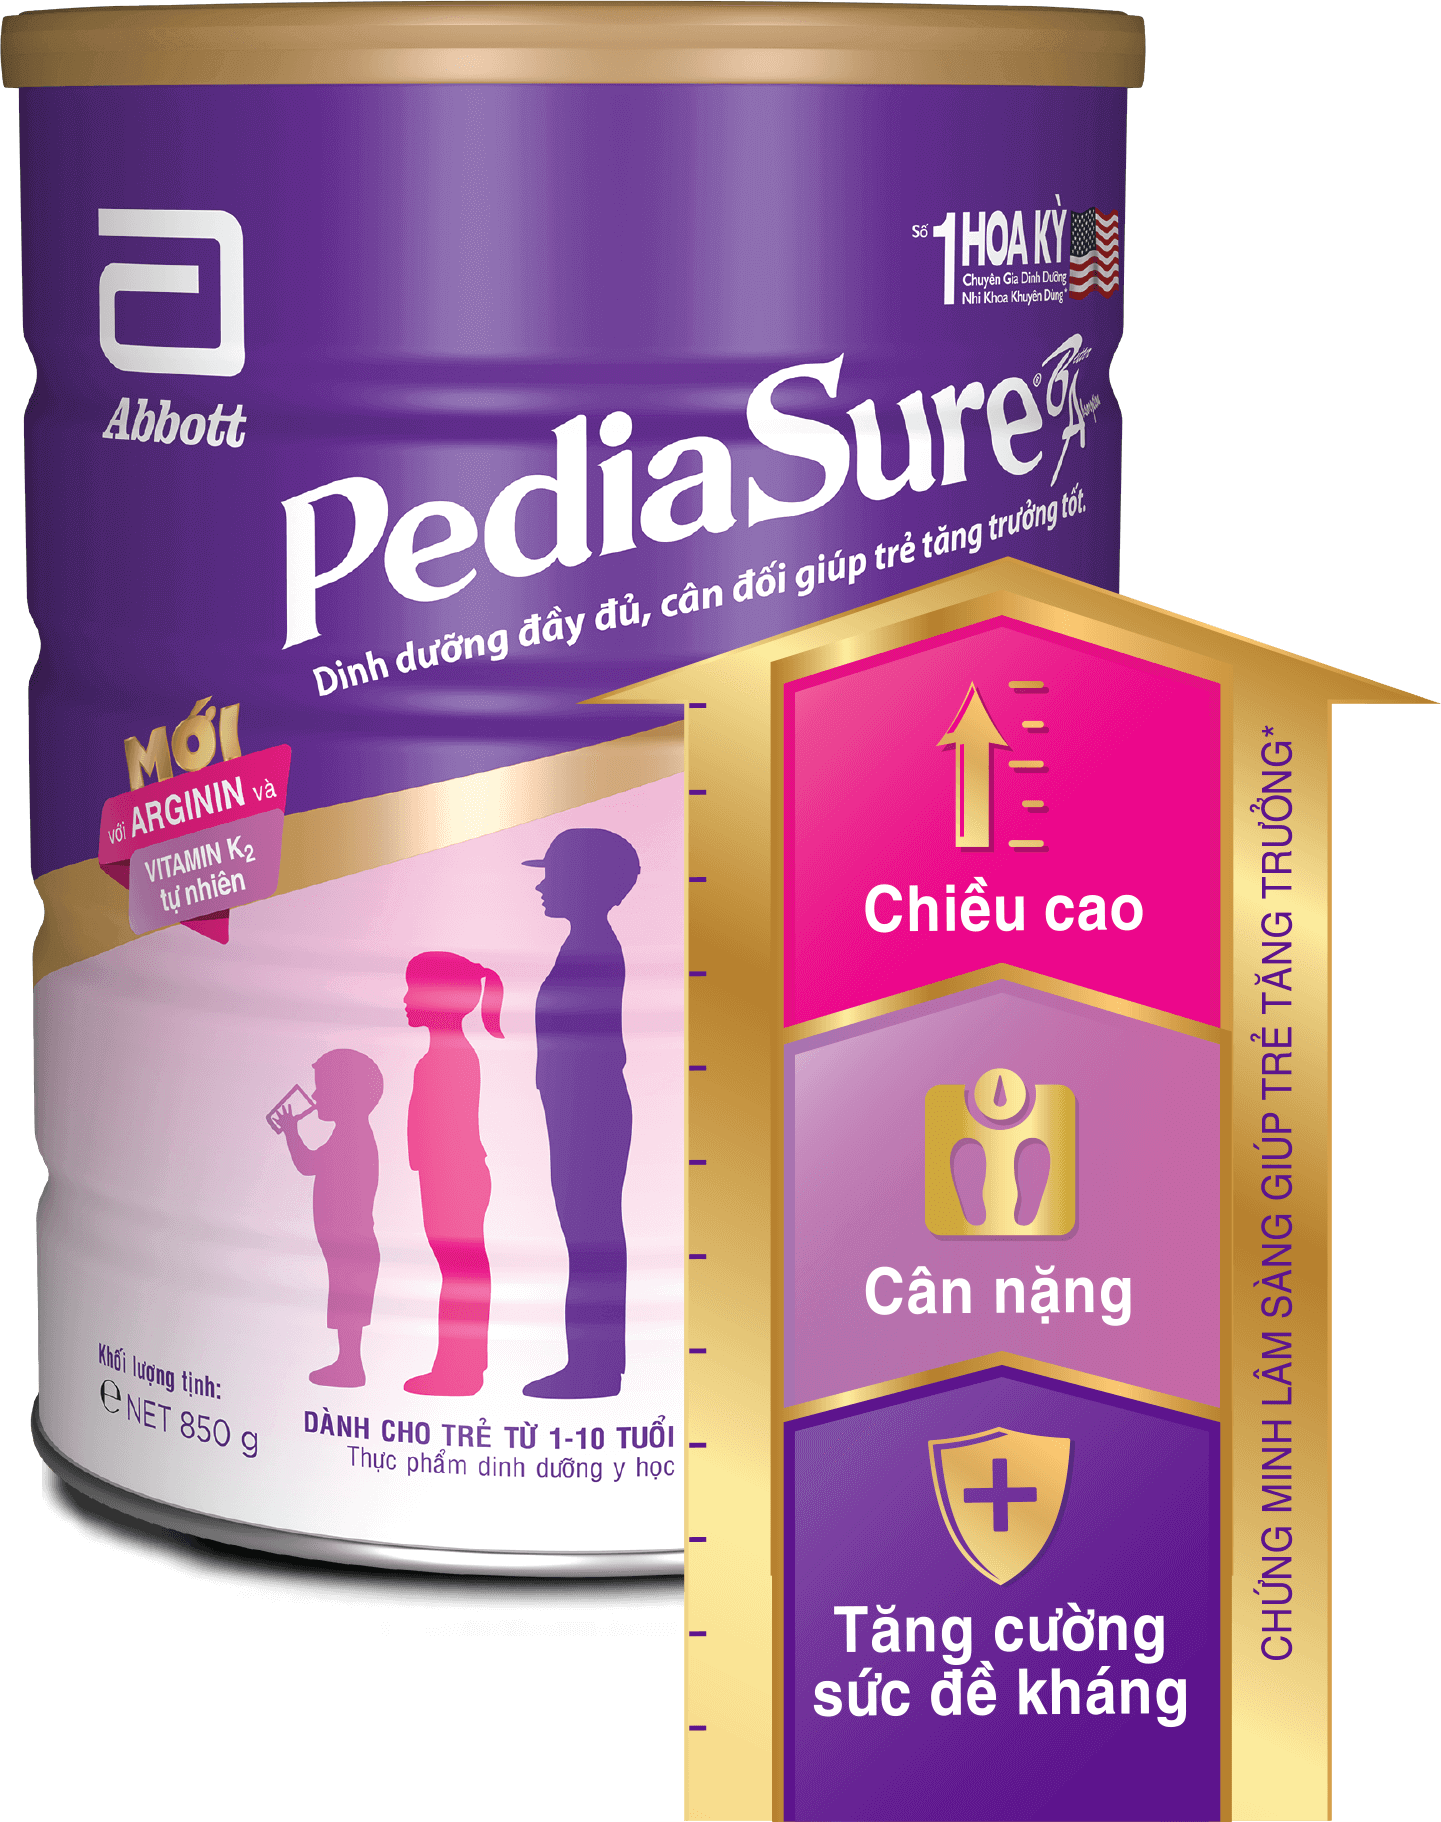 PediaSure mới với Arginin & Vitamin K2 được chuyên gia dinh dưỡng nhi khoa khuyên dùng